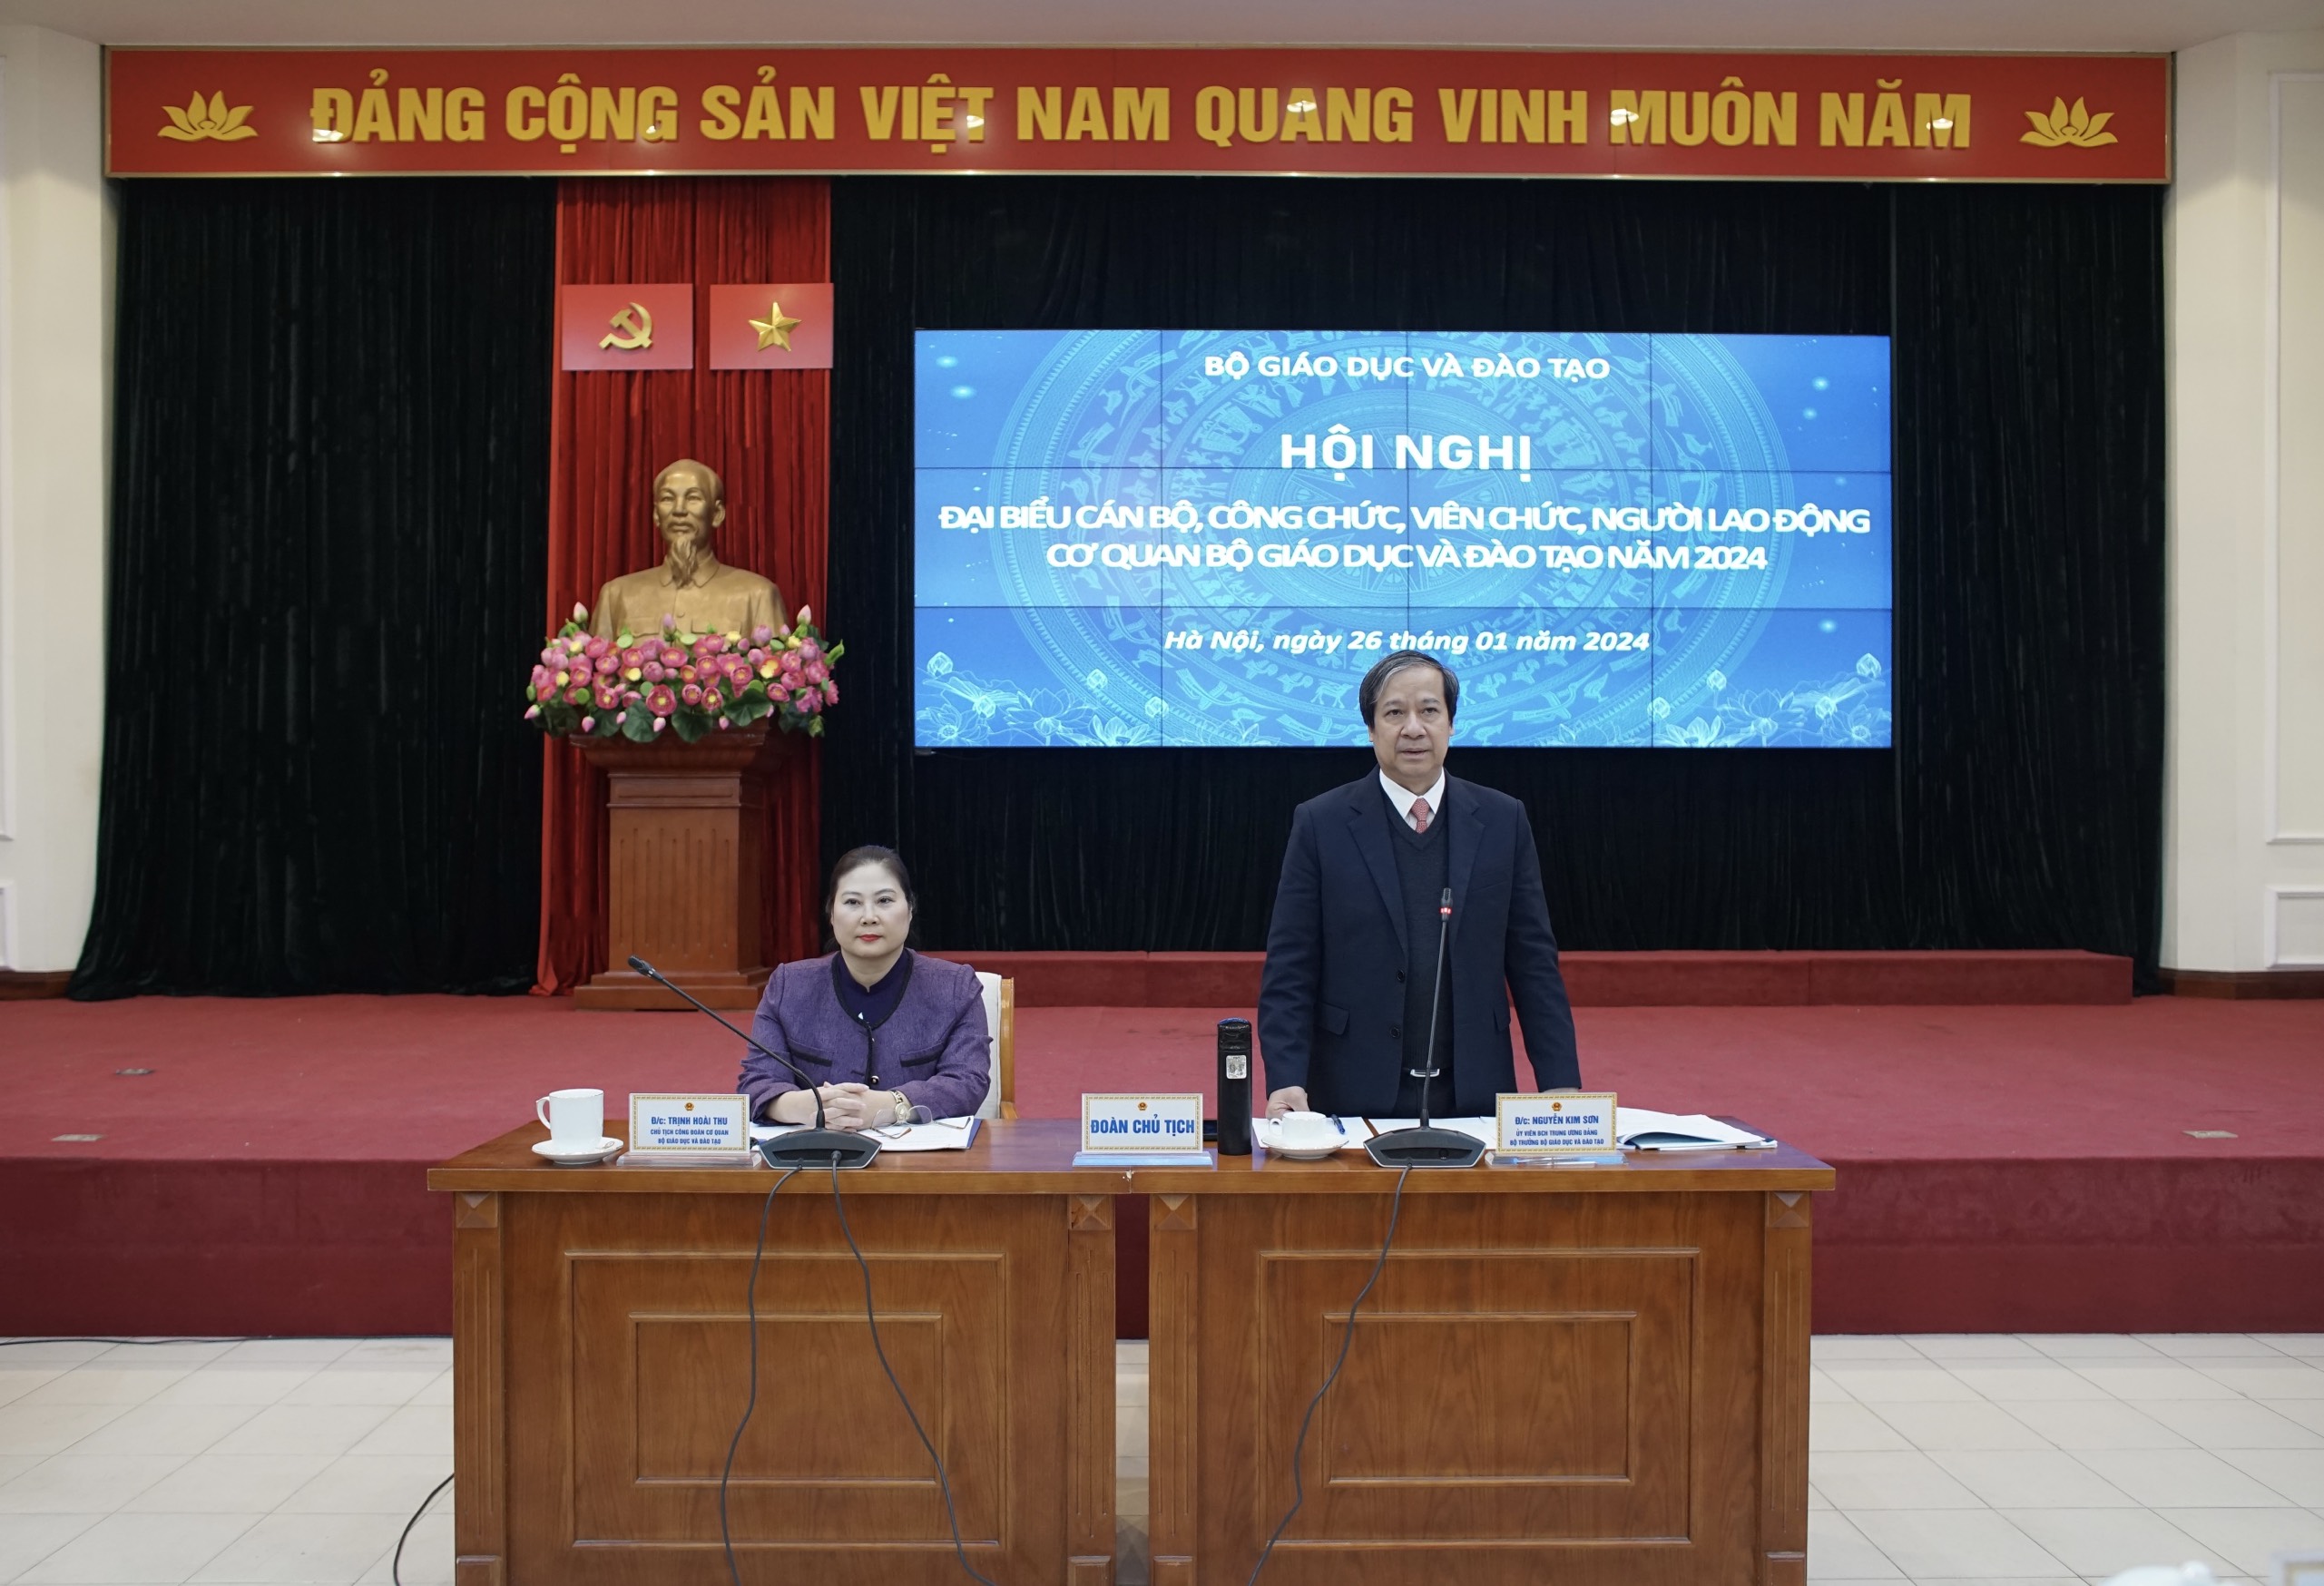 Bộ trưởng Nguyễn Kim Sơn phát biểu tại hội nghị.